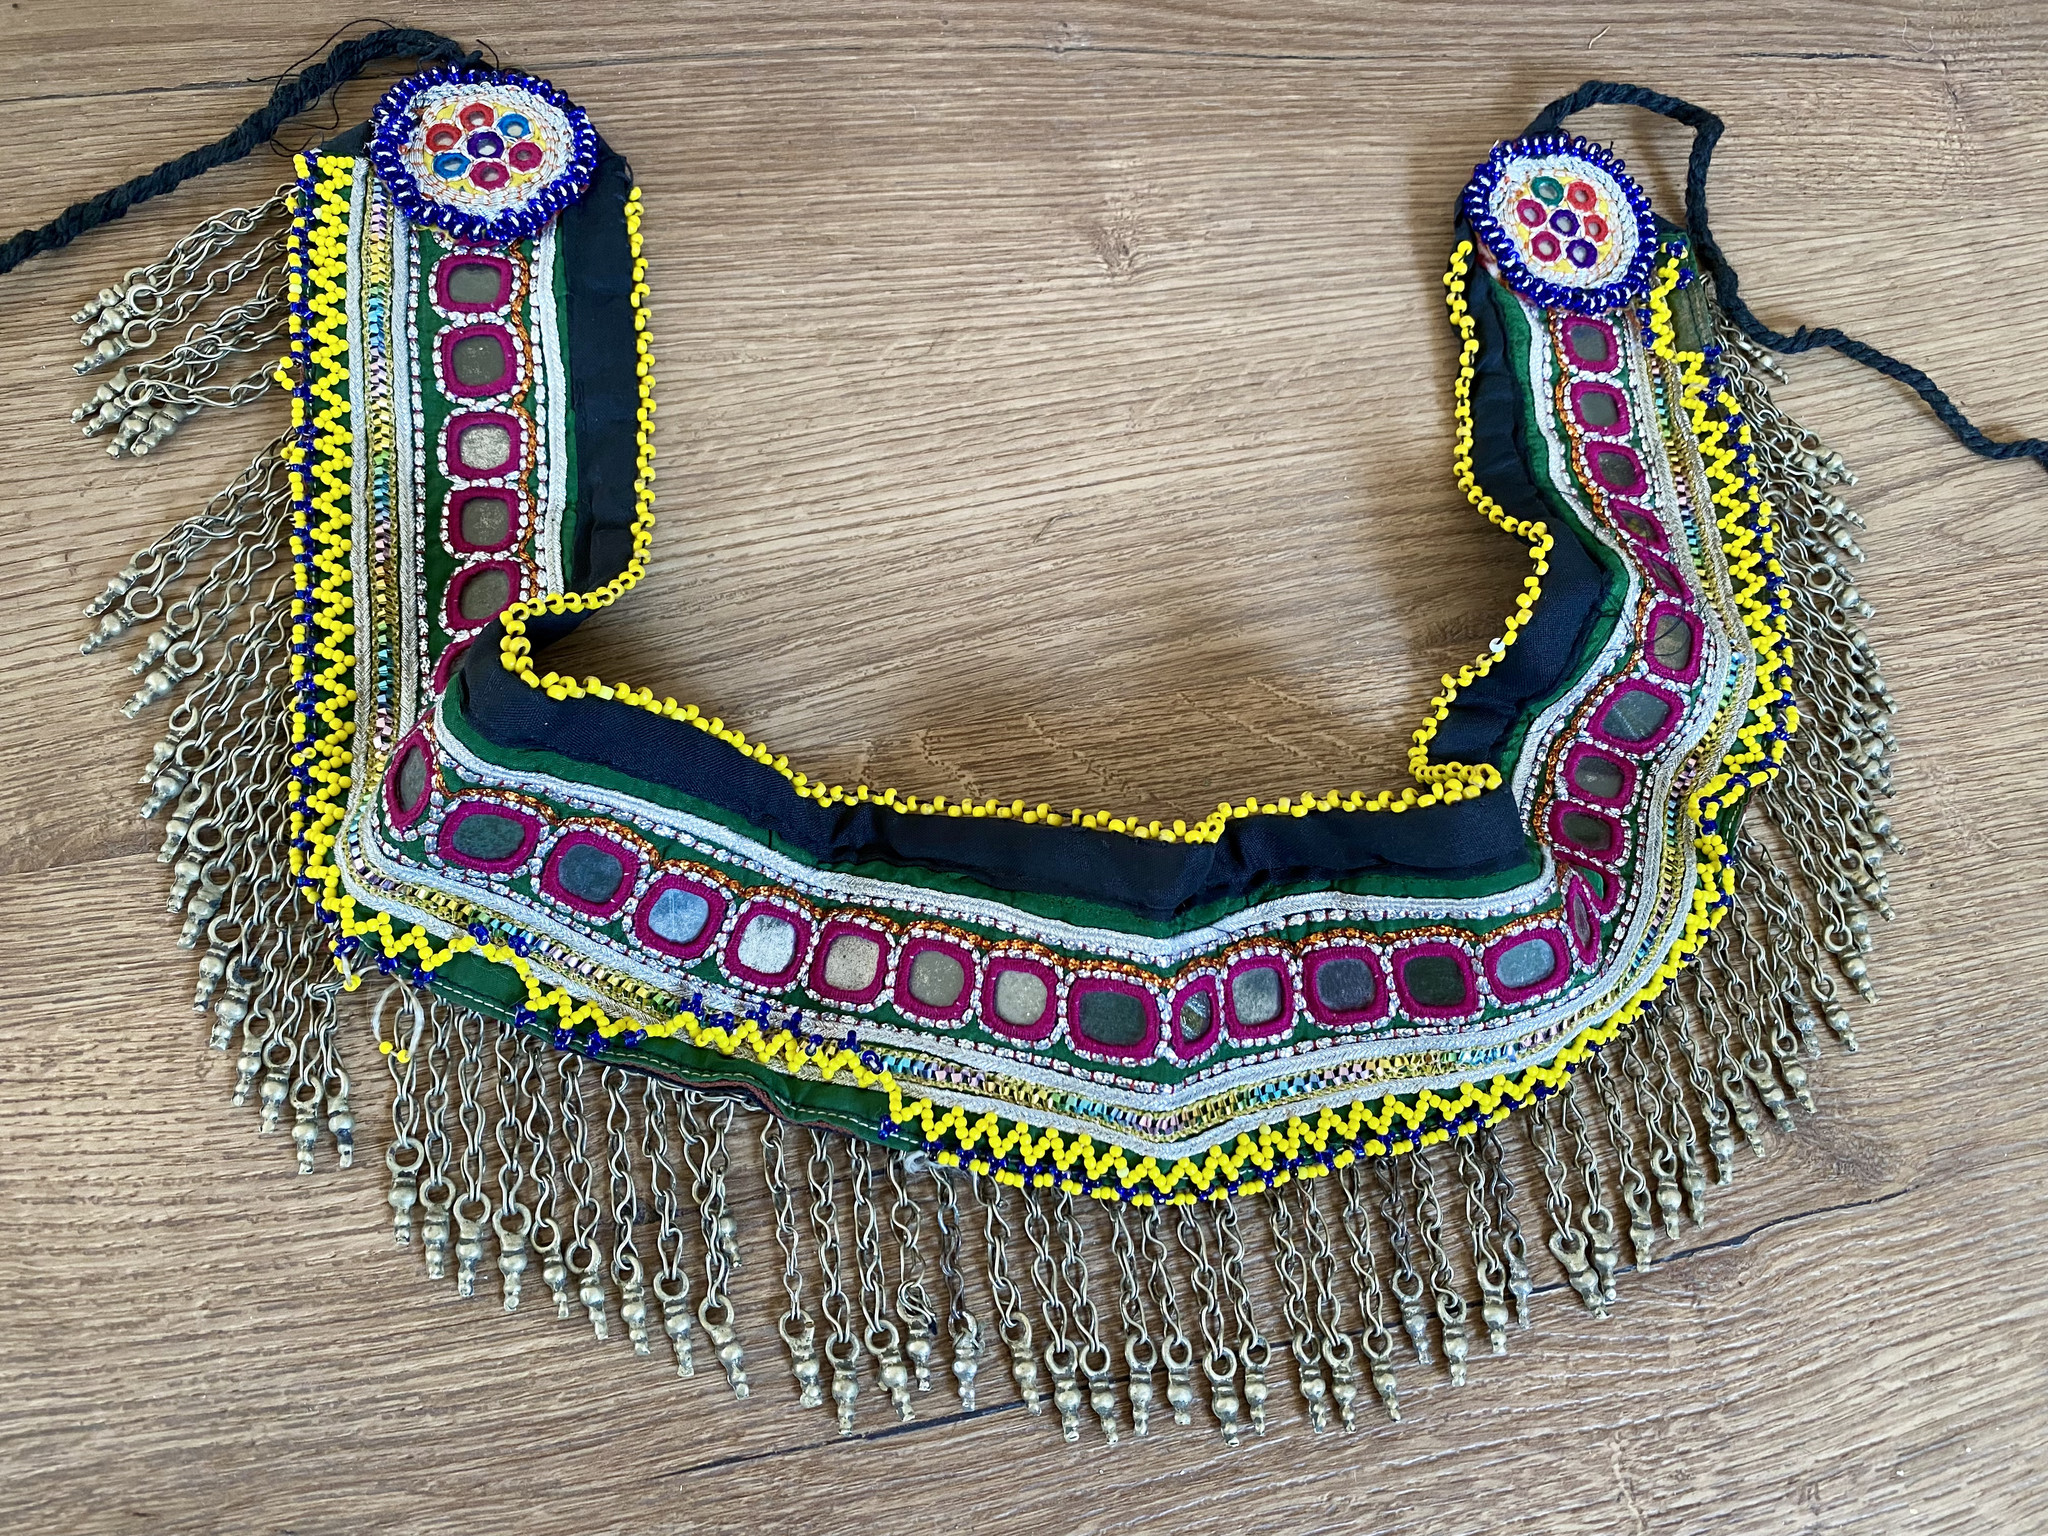 Tribal belt with metal fringe